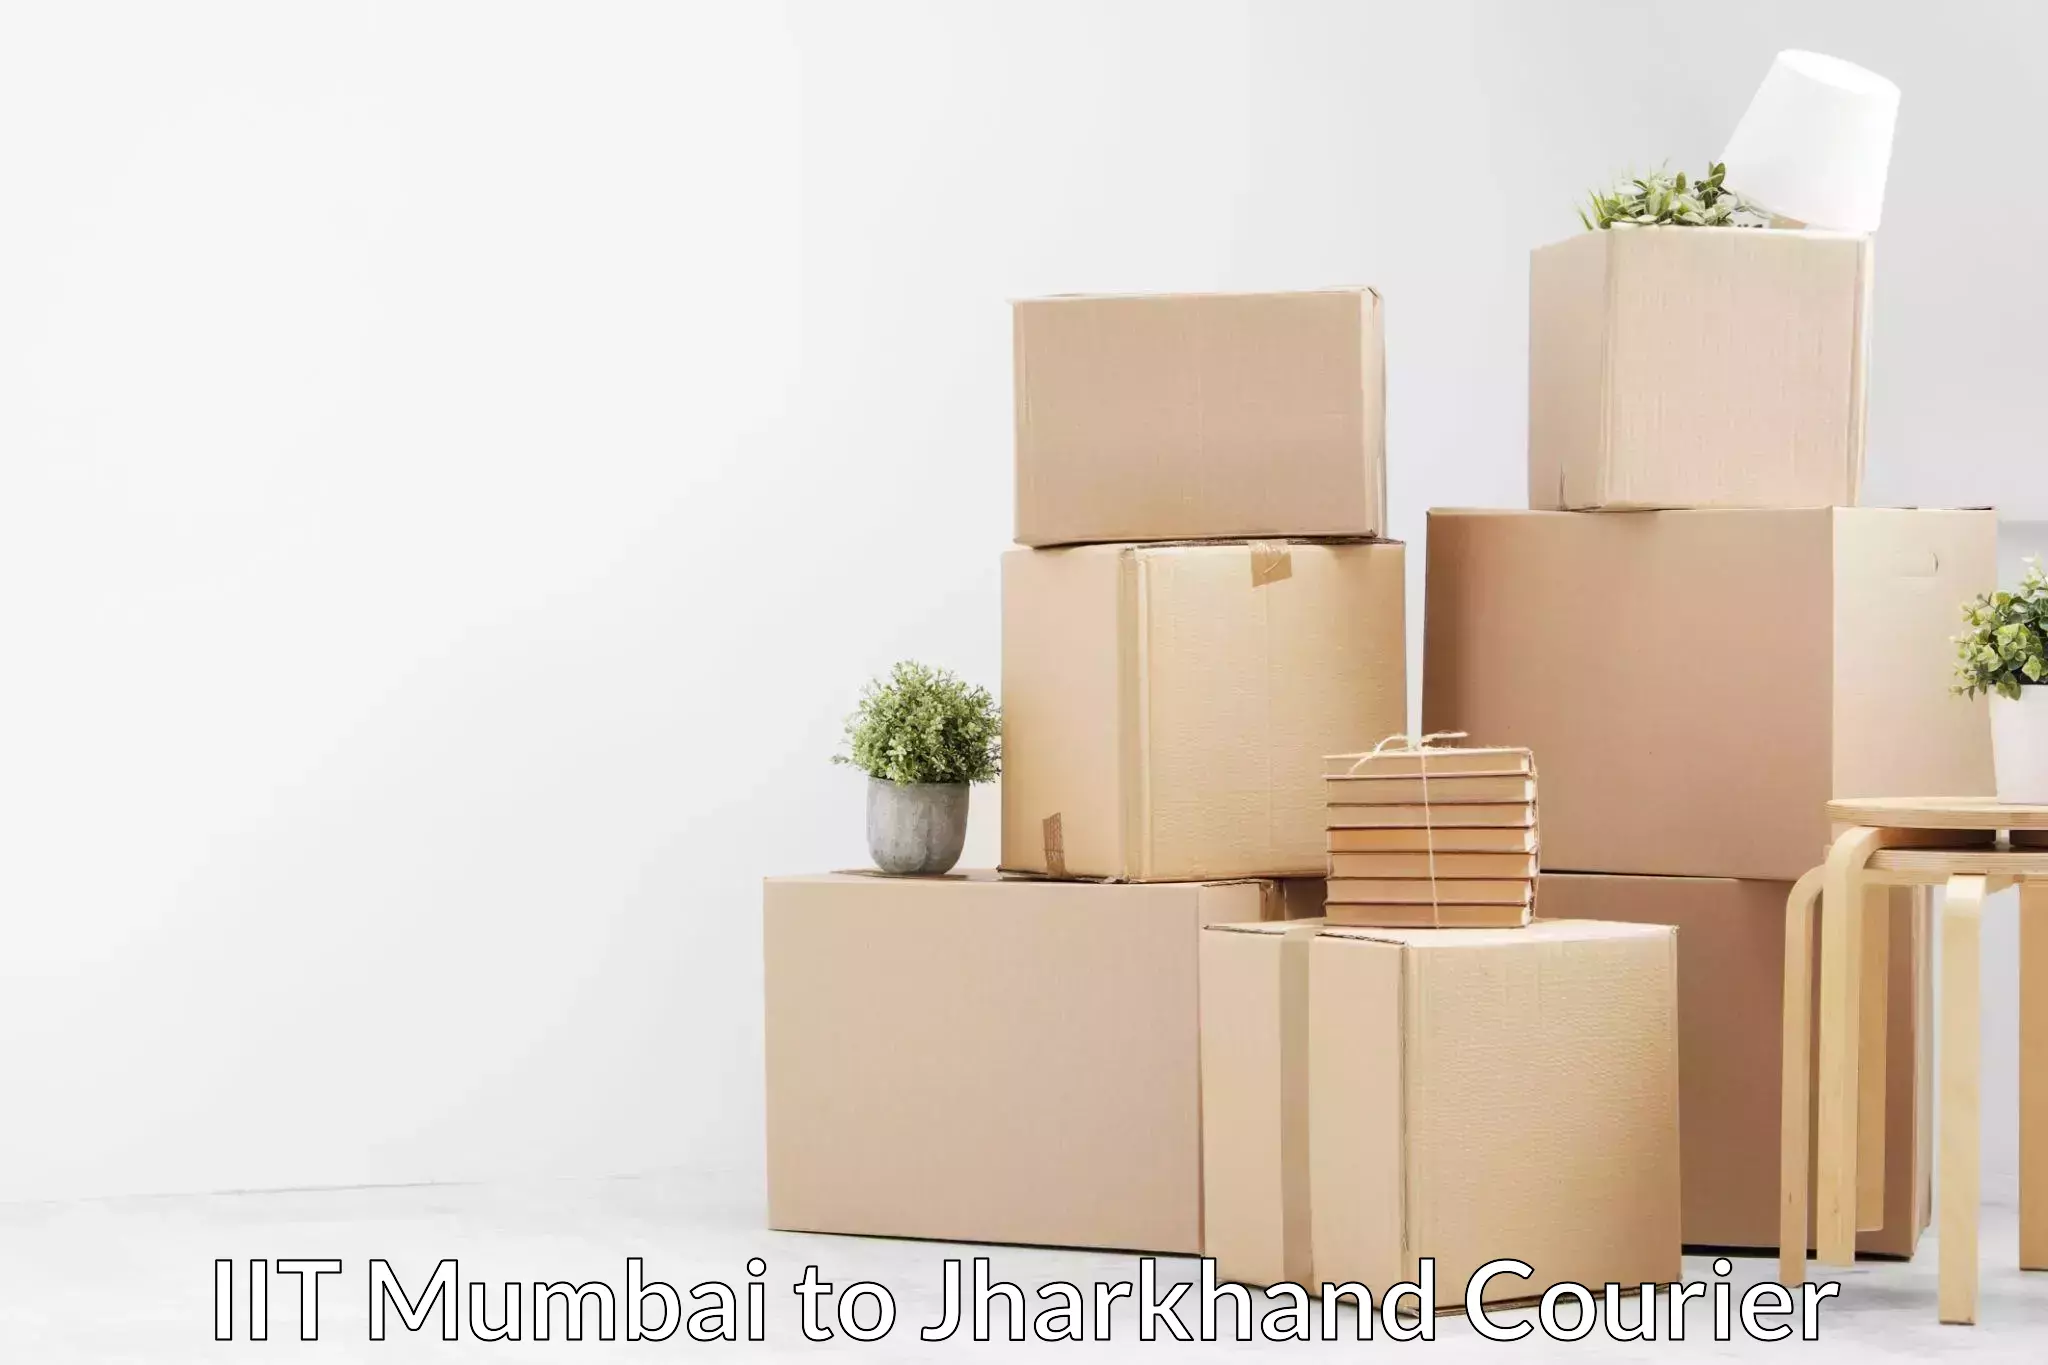 Furniture moving strategies IIT Mumbai to Maheshpur